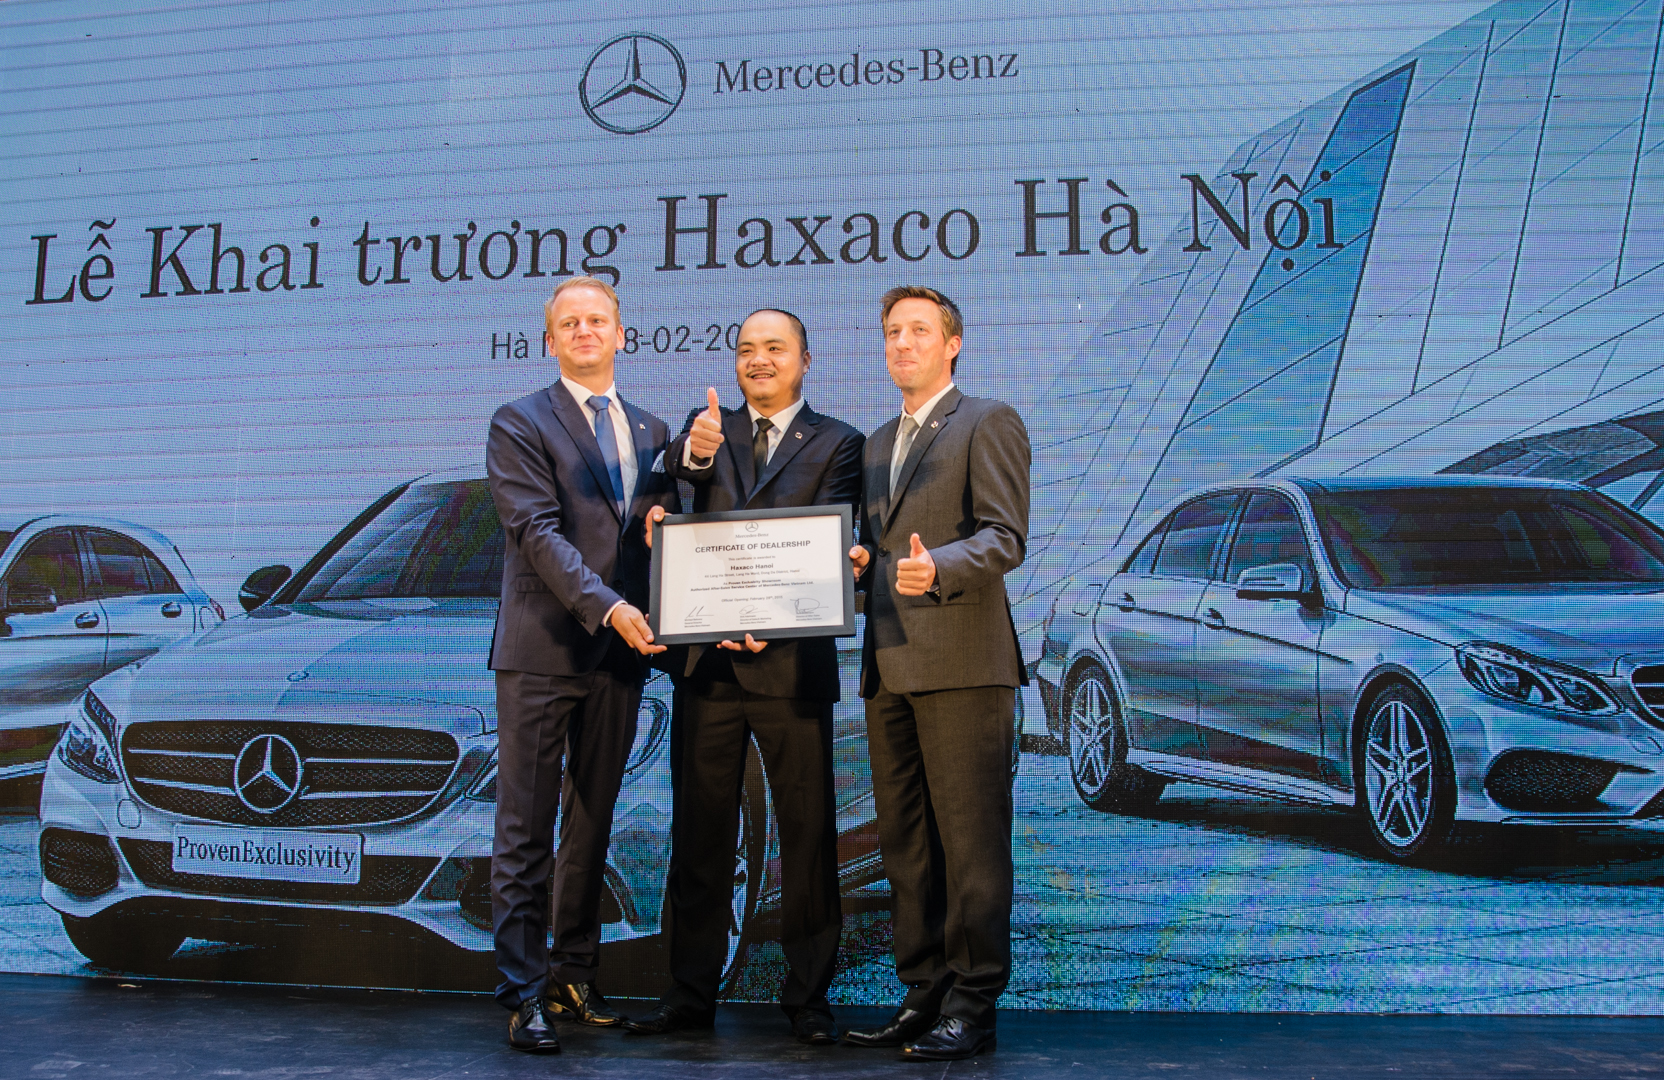 Khai trương showroom Mercedes-Benz và Haxaco mới tại Hà Nội